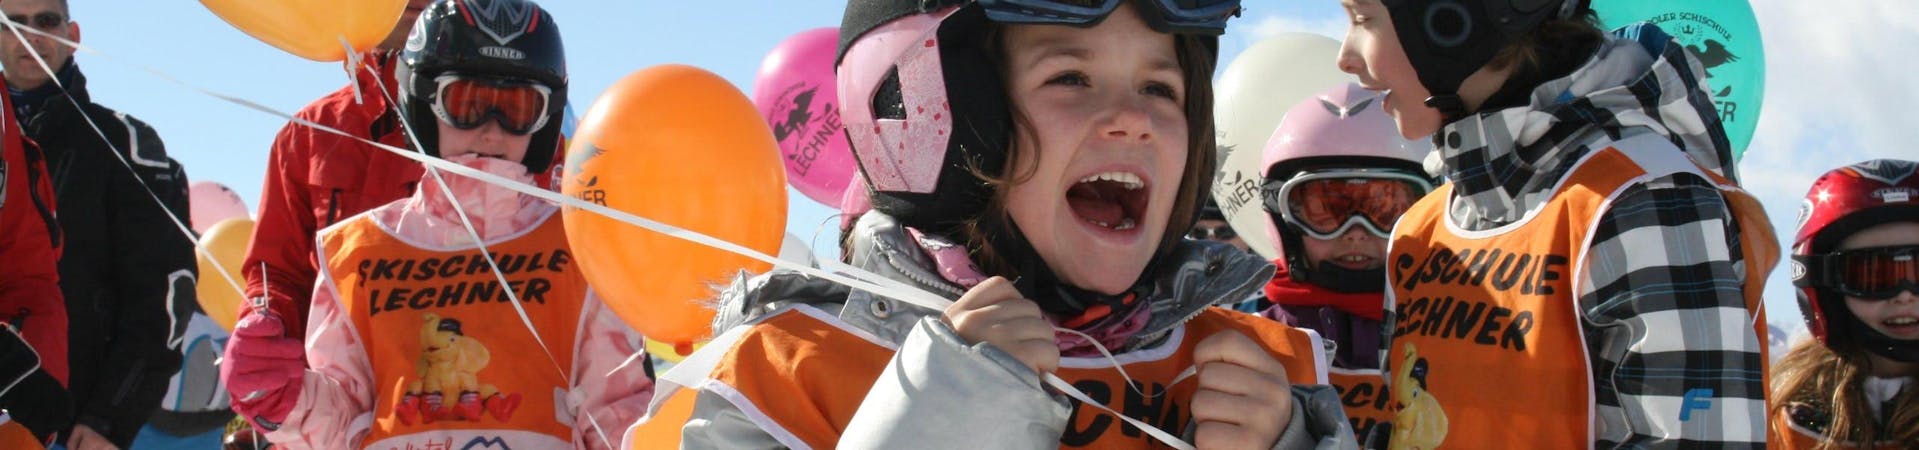 Lezioni di sci per bambini a partire da 5 anni principianti assoluti.